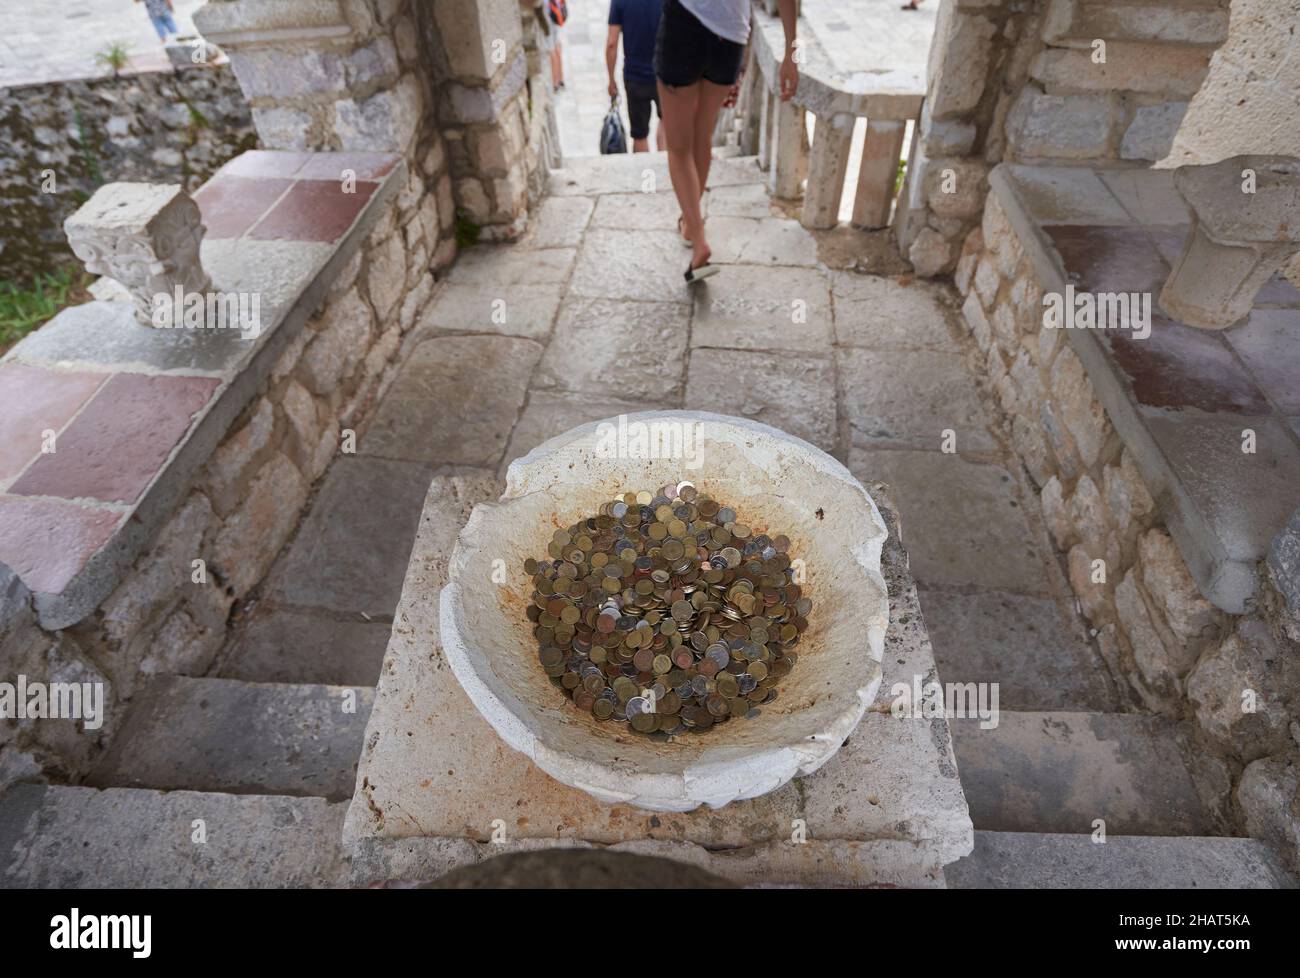 Les touristes laissent dans le bol de pierre des pièces de monnaie chanceux dans l'église à des souhaits. Banque D'Images